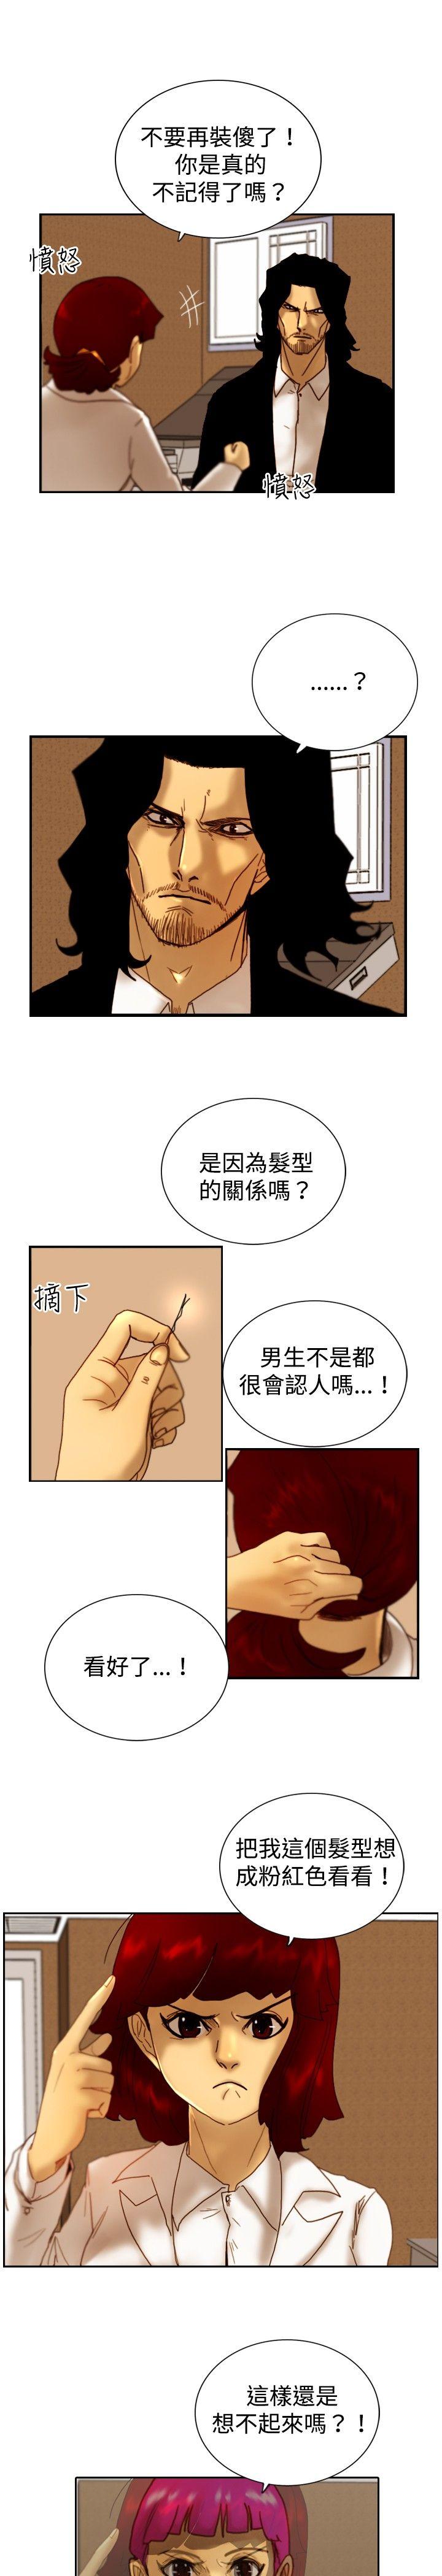 韩国污漫画 覺醒(完結) 第14话作战-2 7